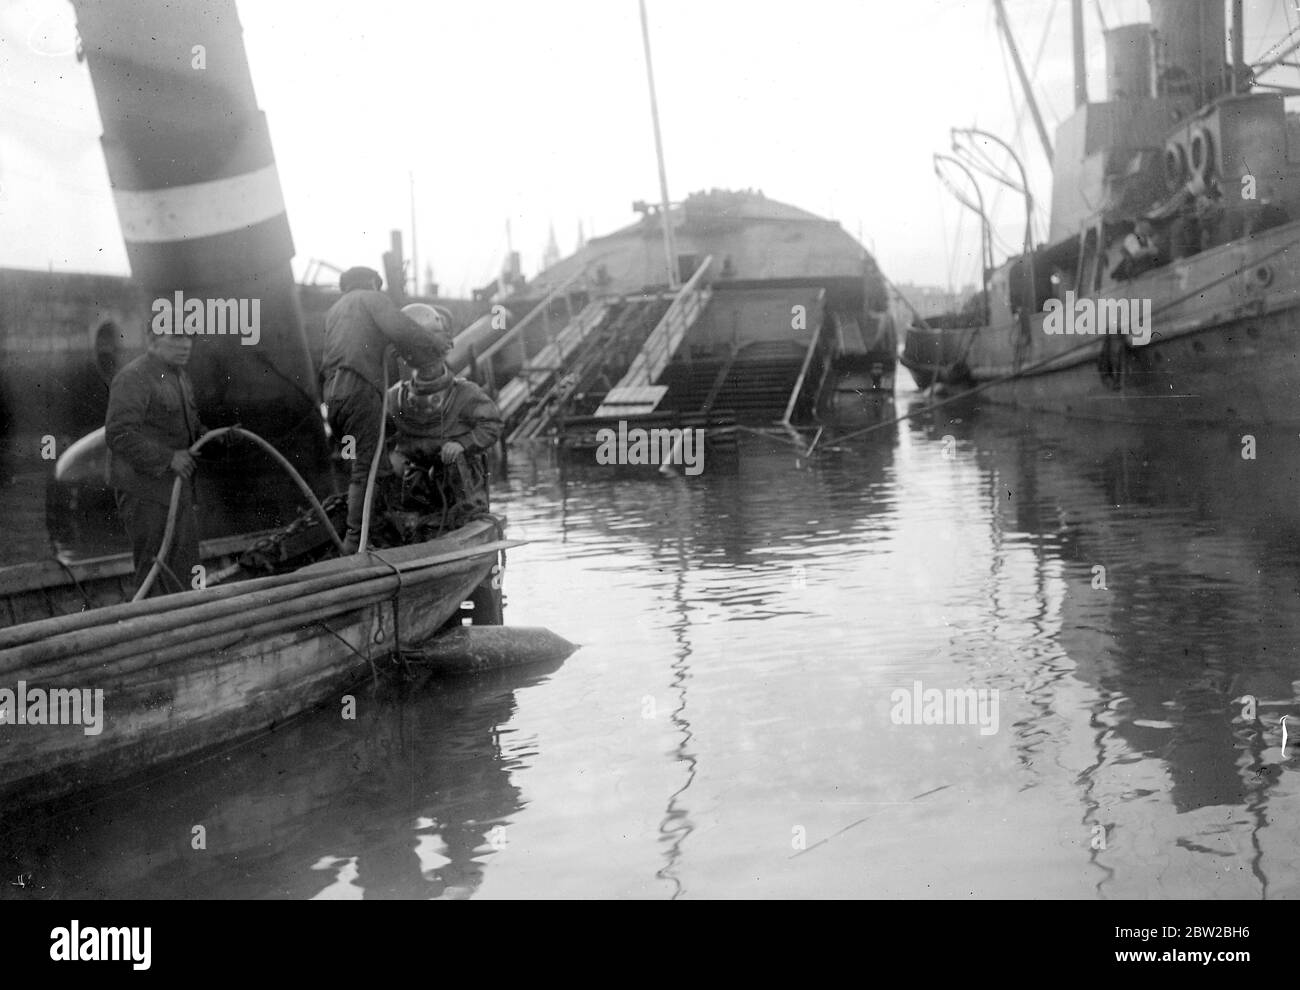 Die versunkenen Schiffe in Ostende abräumen. Taucher absteigend zu klaren Ketten, die die Hebevorrichtungen führen. November 1918 Stockfoto